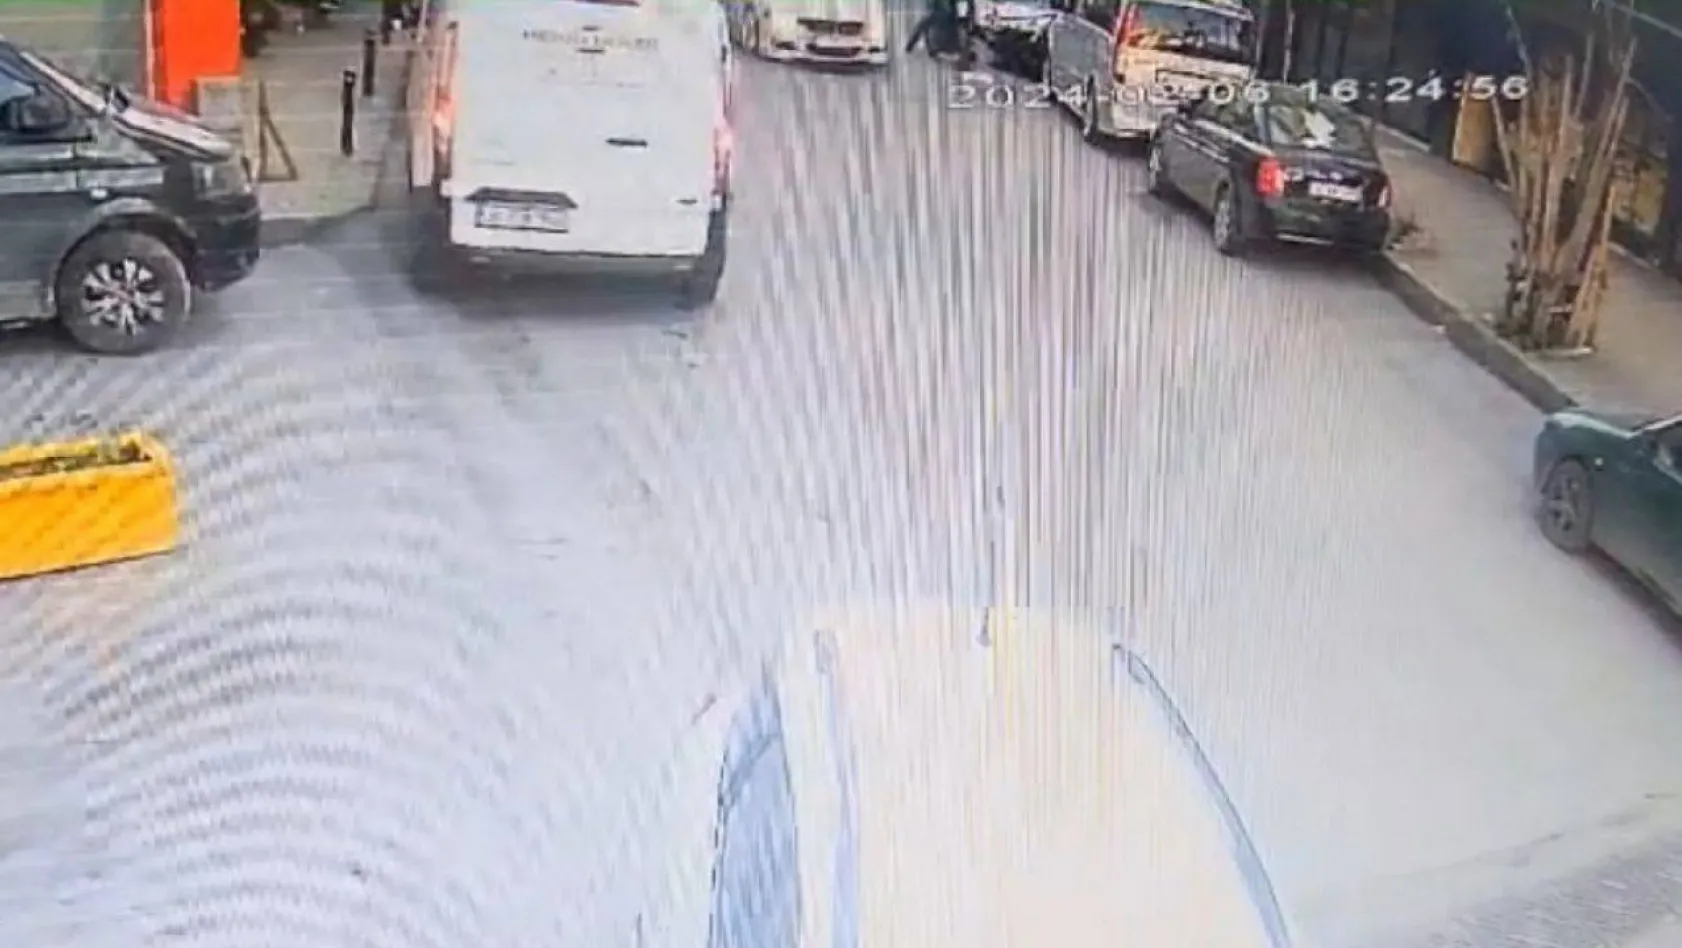 İstanbul'da motosikletli adama silahlı saldırı kamerada: Önünü kesip başından vurdular